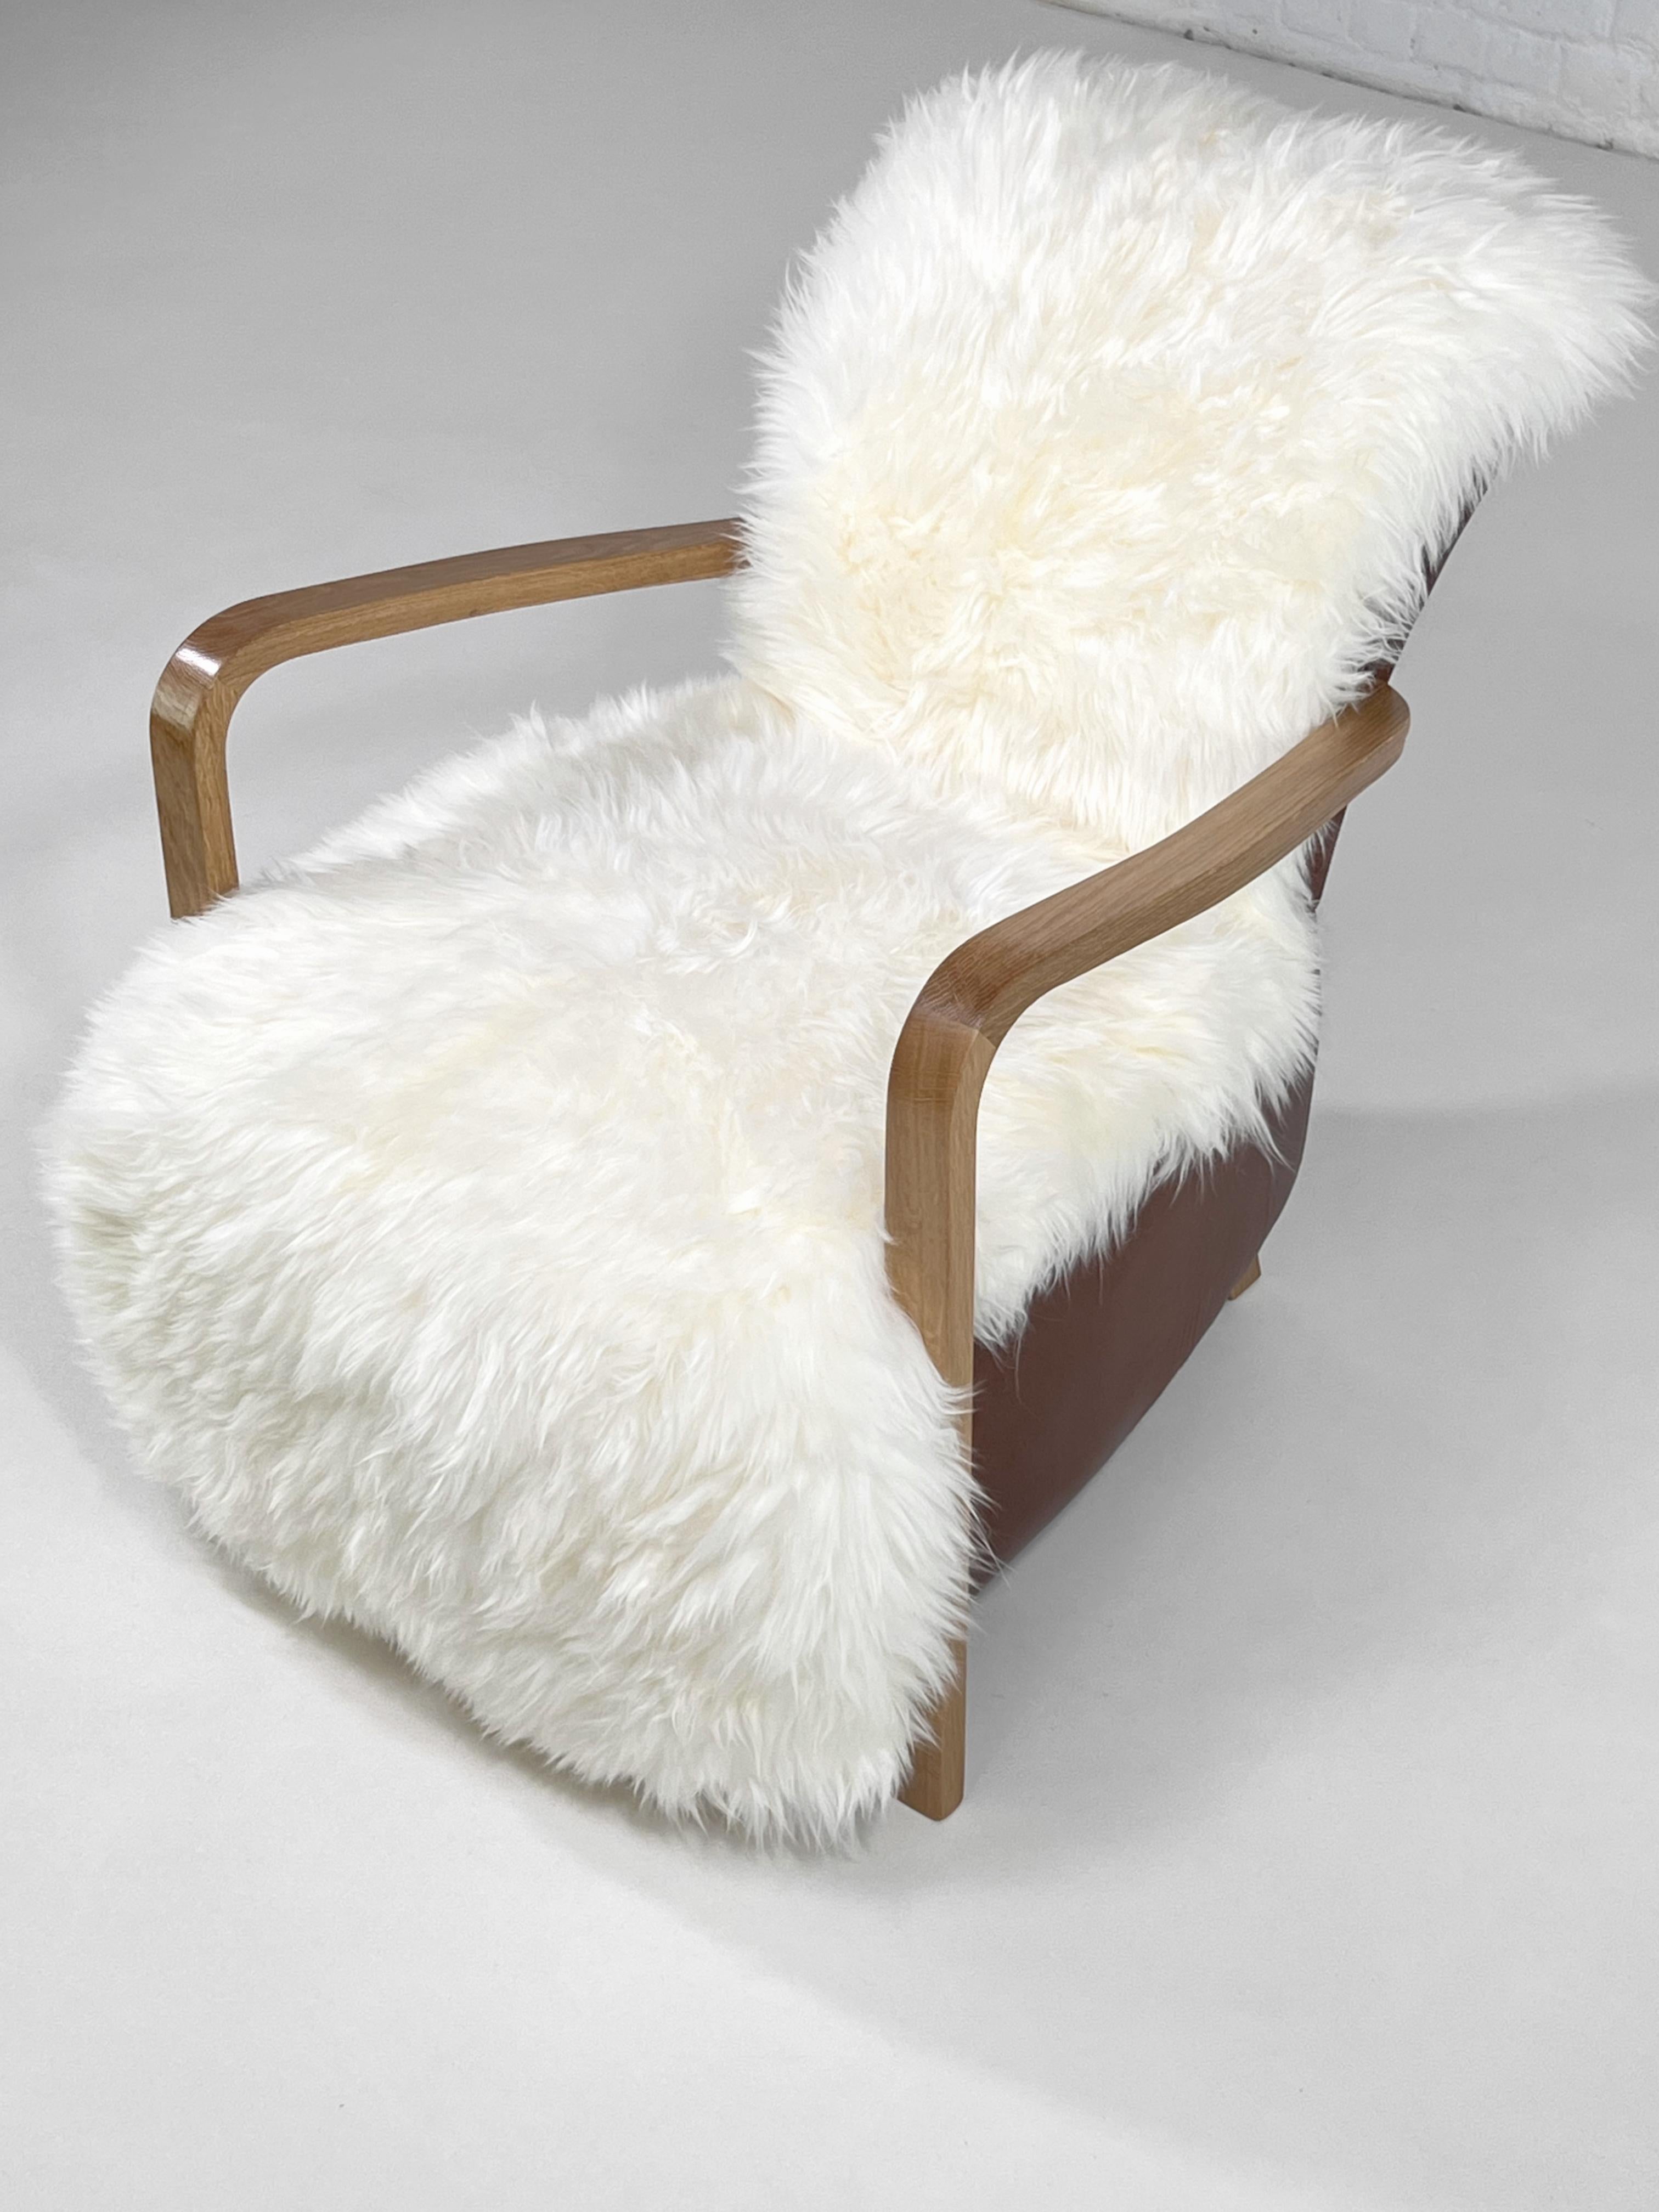 1950er - 1960er Jahre MCM Design Skandinavischen Stil Holz und Cognac Leder Lounge-Sessel mit Schaffell Sitz von einem natürlichen hölzernen Füße, die die vorderen machen die Armlehnen und einen bequemen Sitz in weißem Schaffell mit Cognac Leder